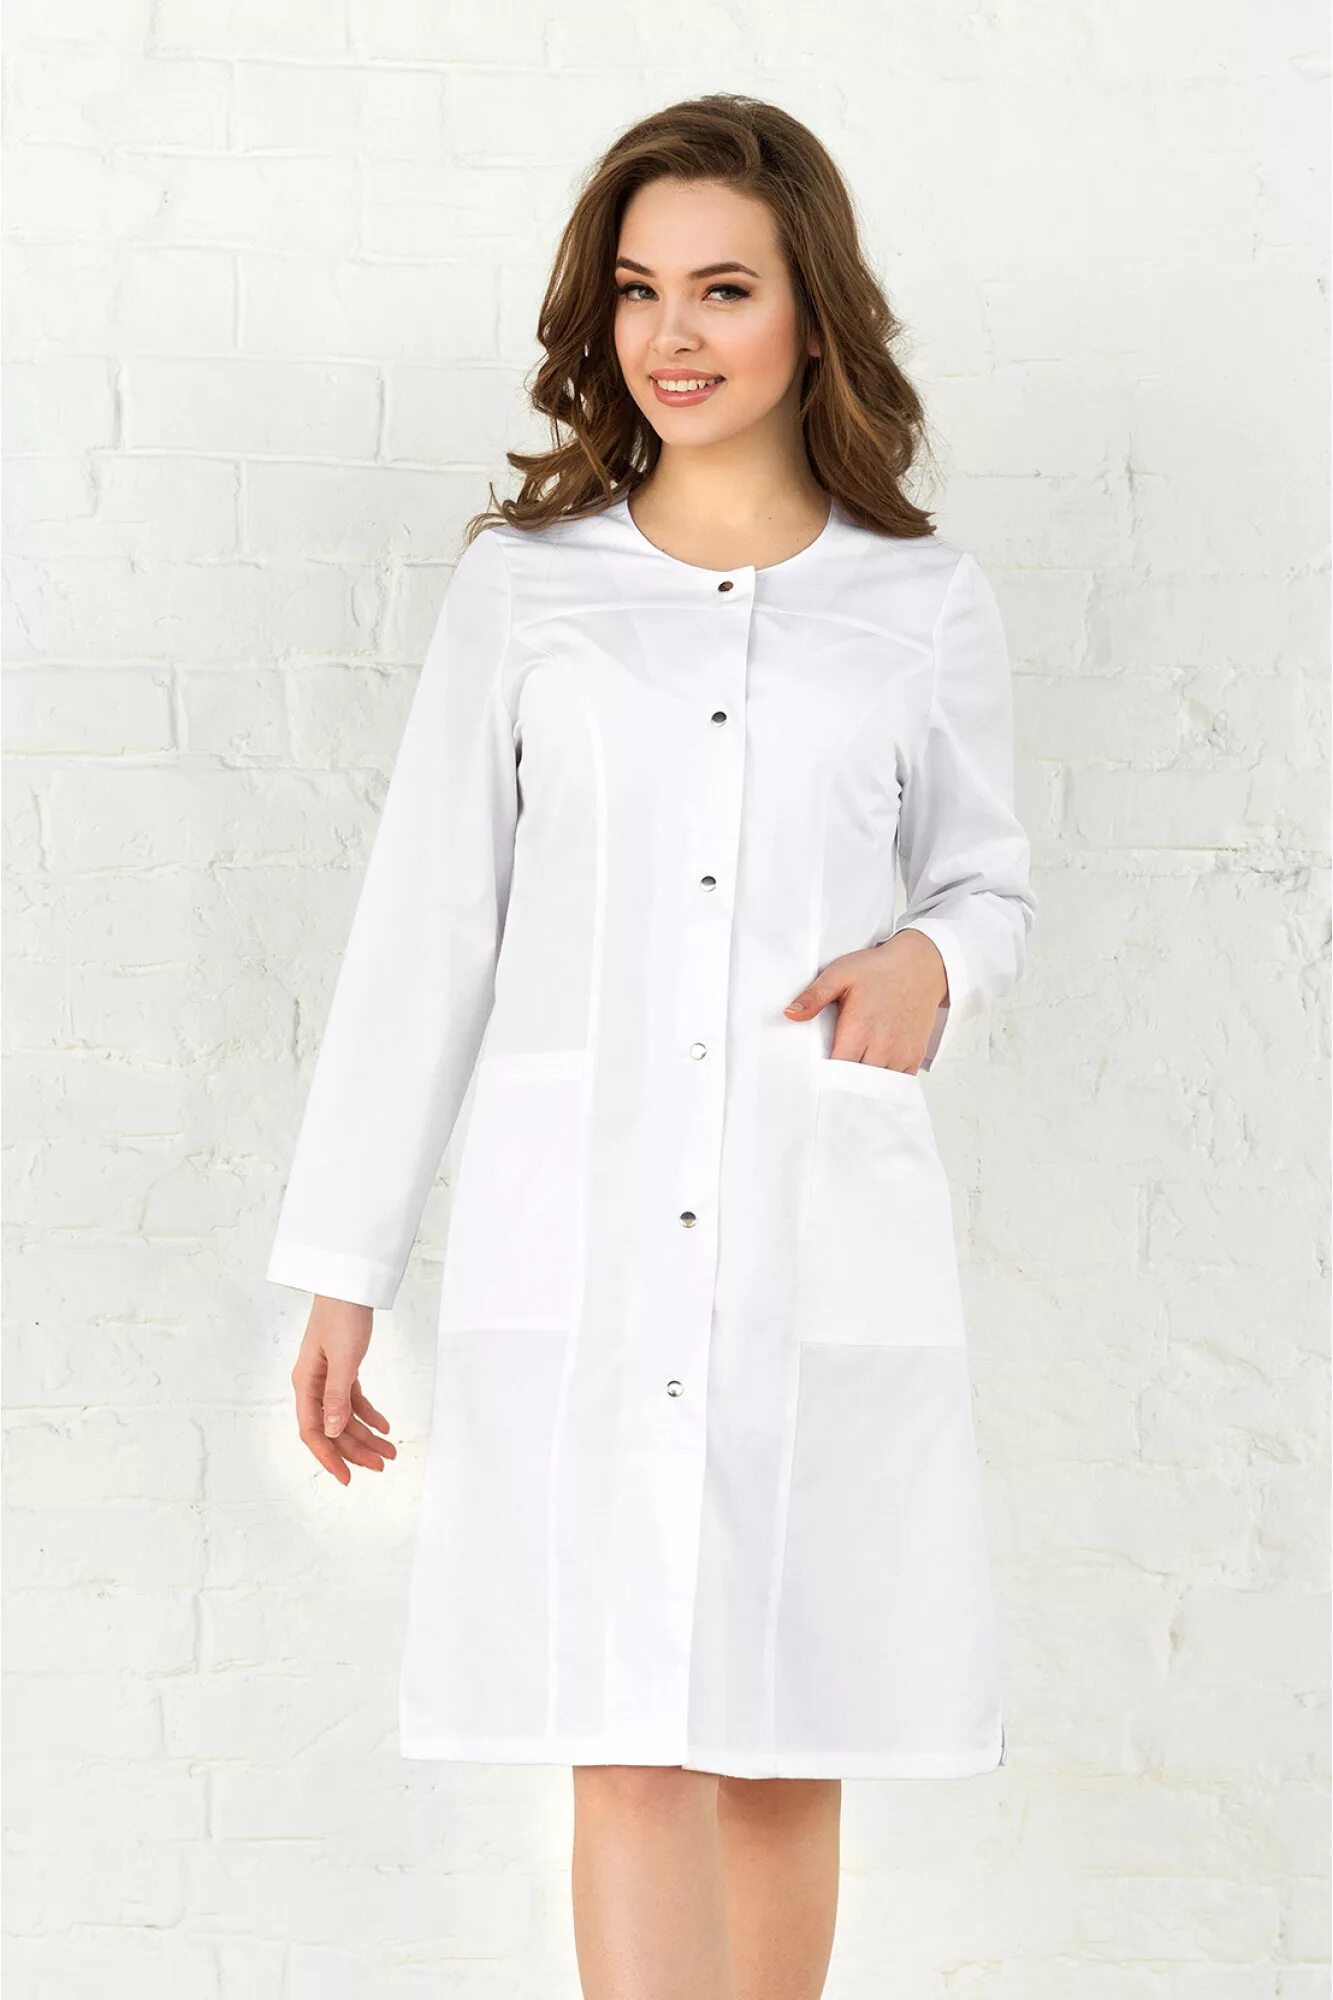 Медицинский халат-платье Медэлит. Халат белый медицинский вильдберис. Халат валберис медицинский 44 размер. Халат медицинский белый. Халат медицинский женский купить в москве